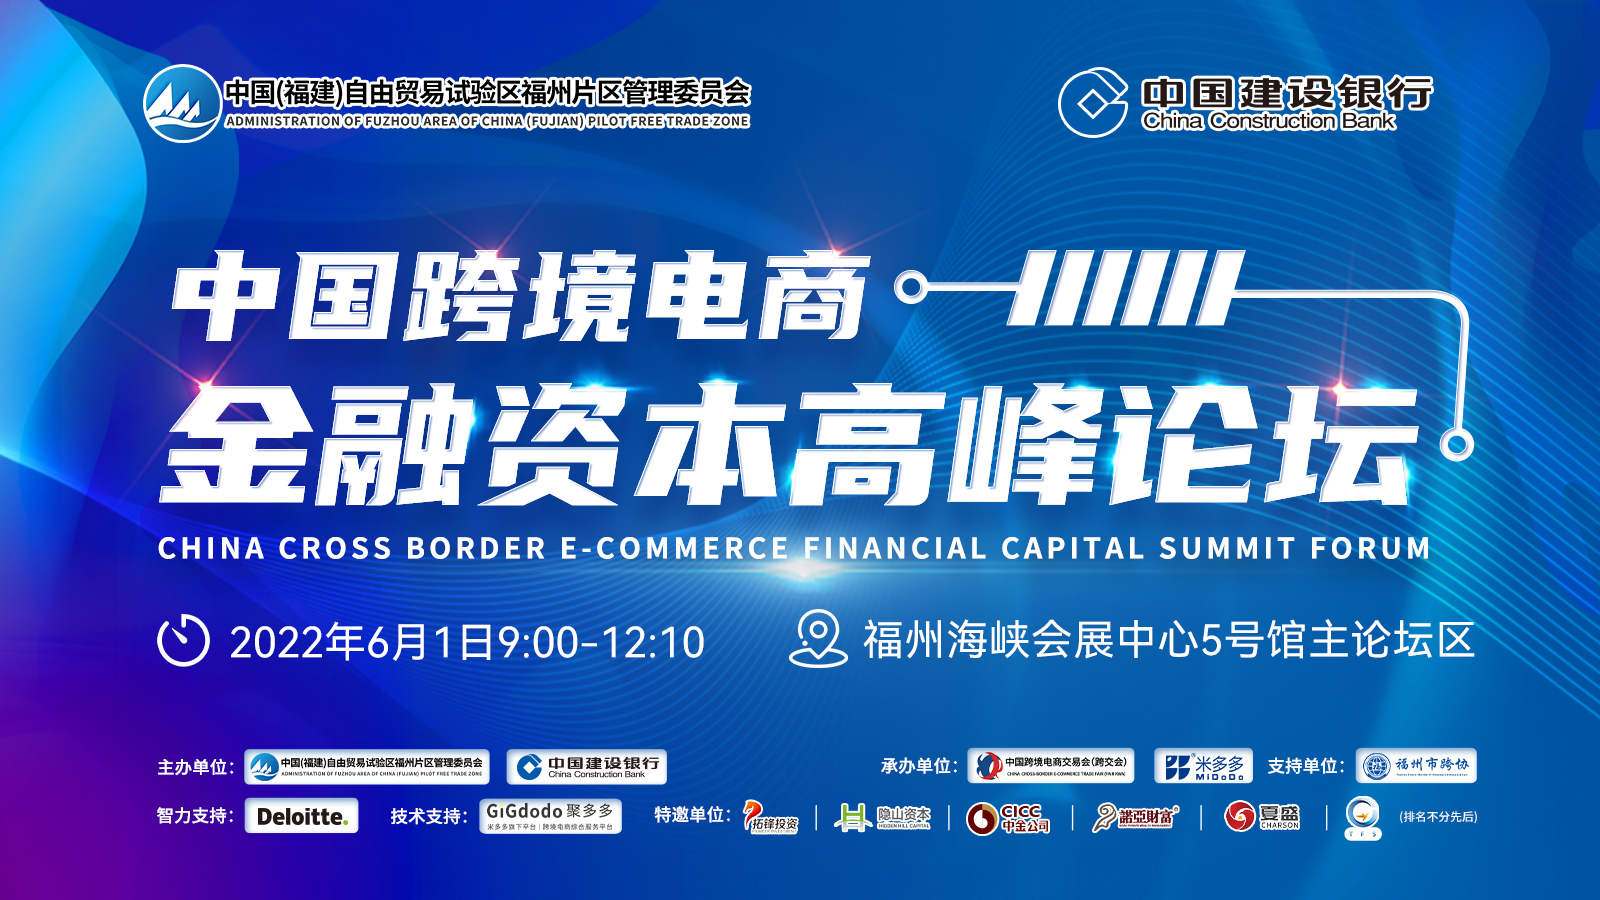 中国跨境电商——金融资本高峰论坛